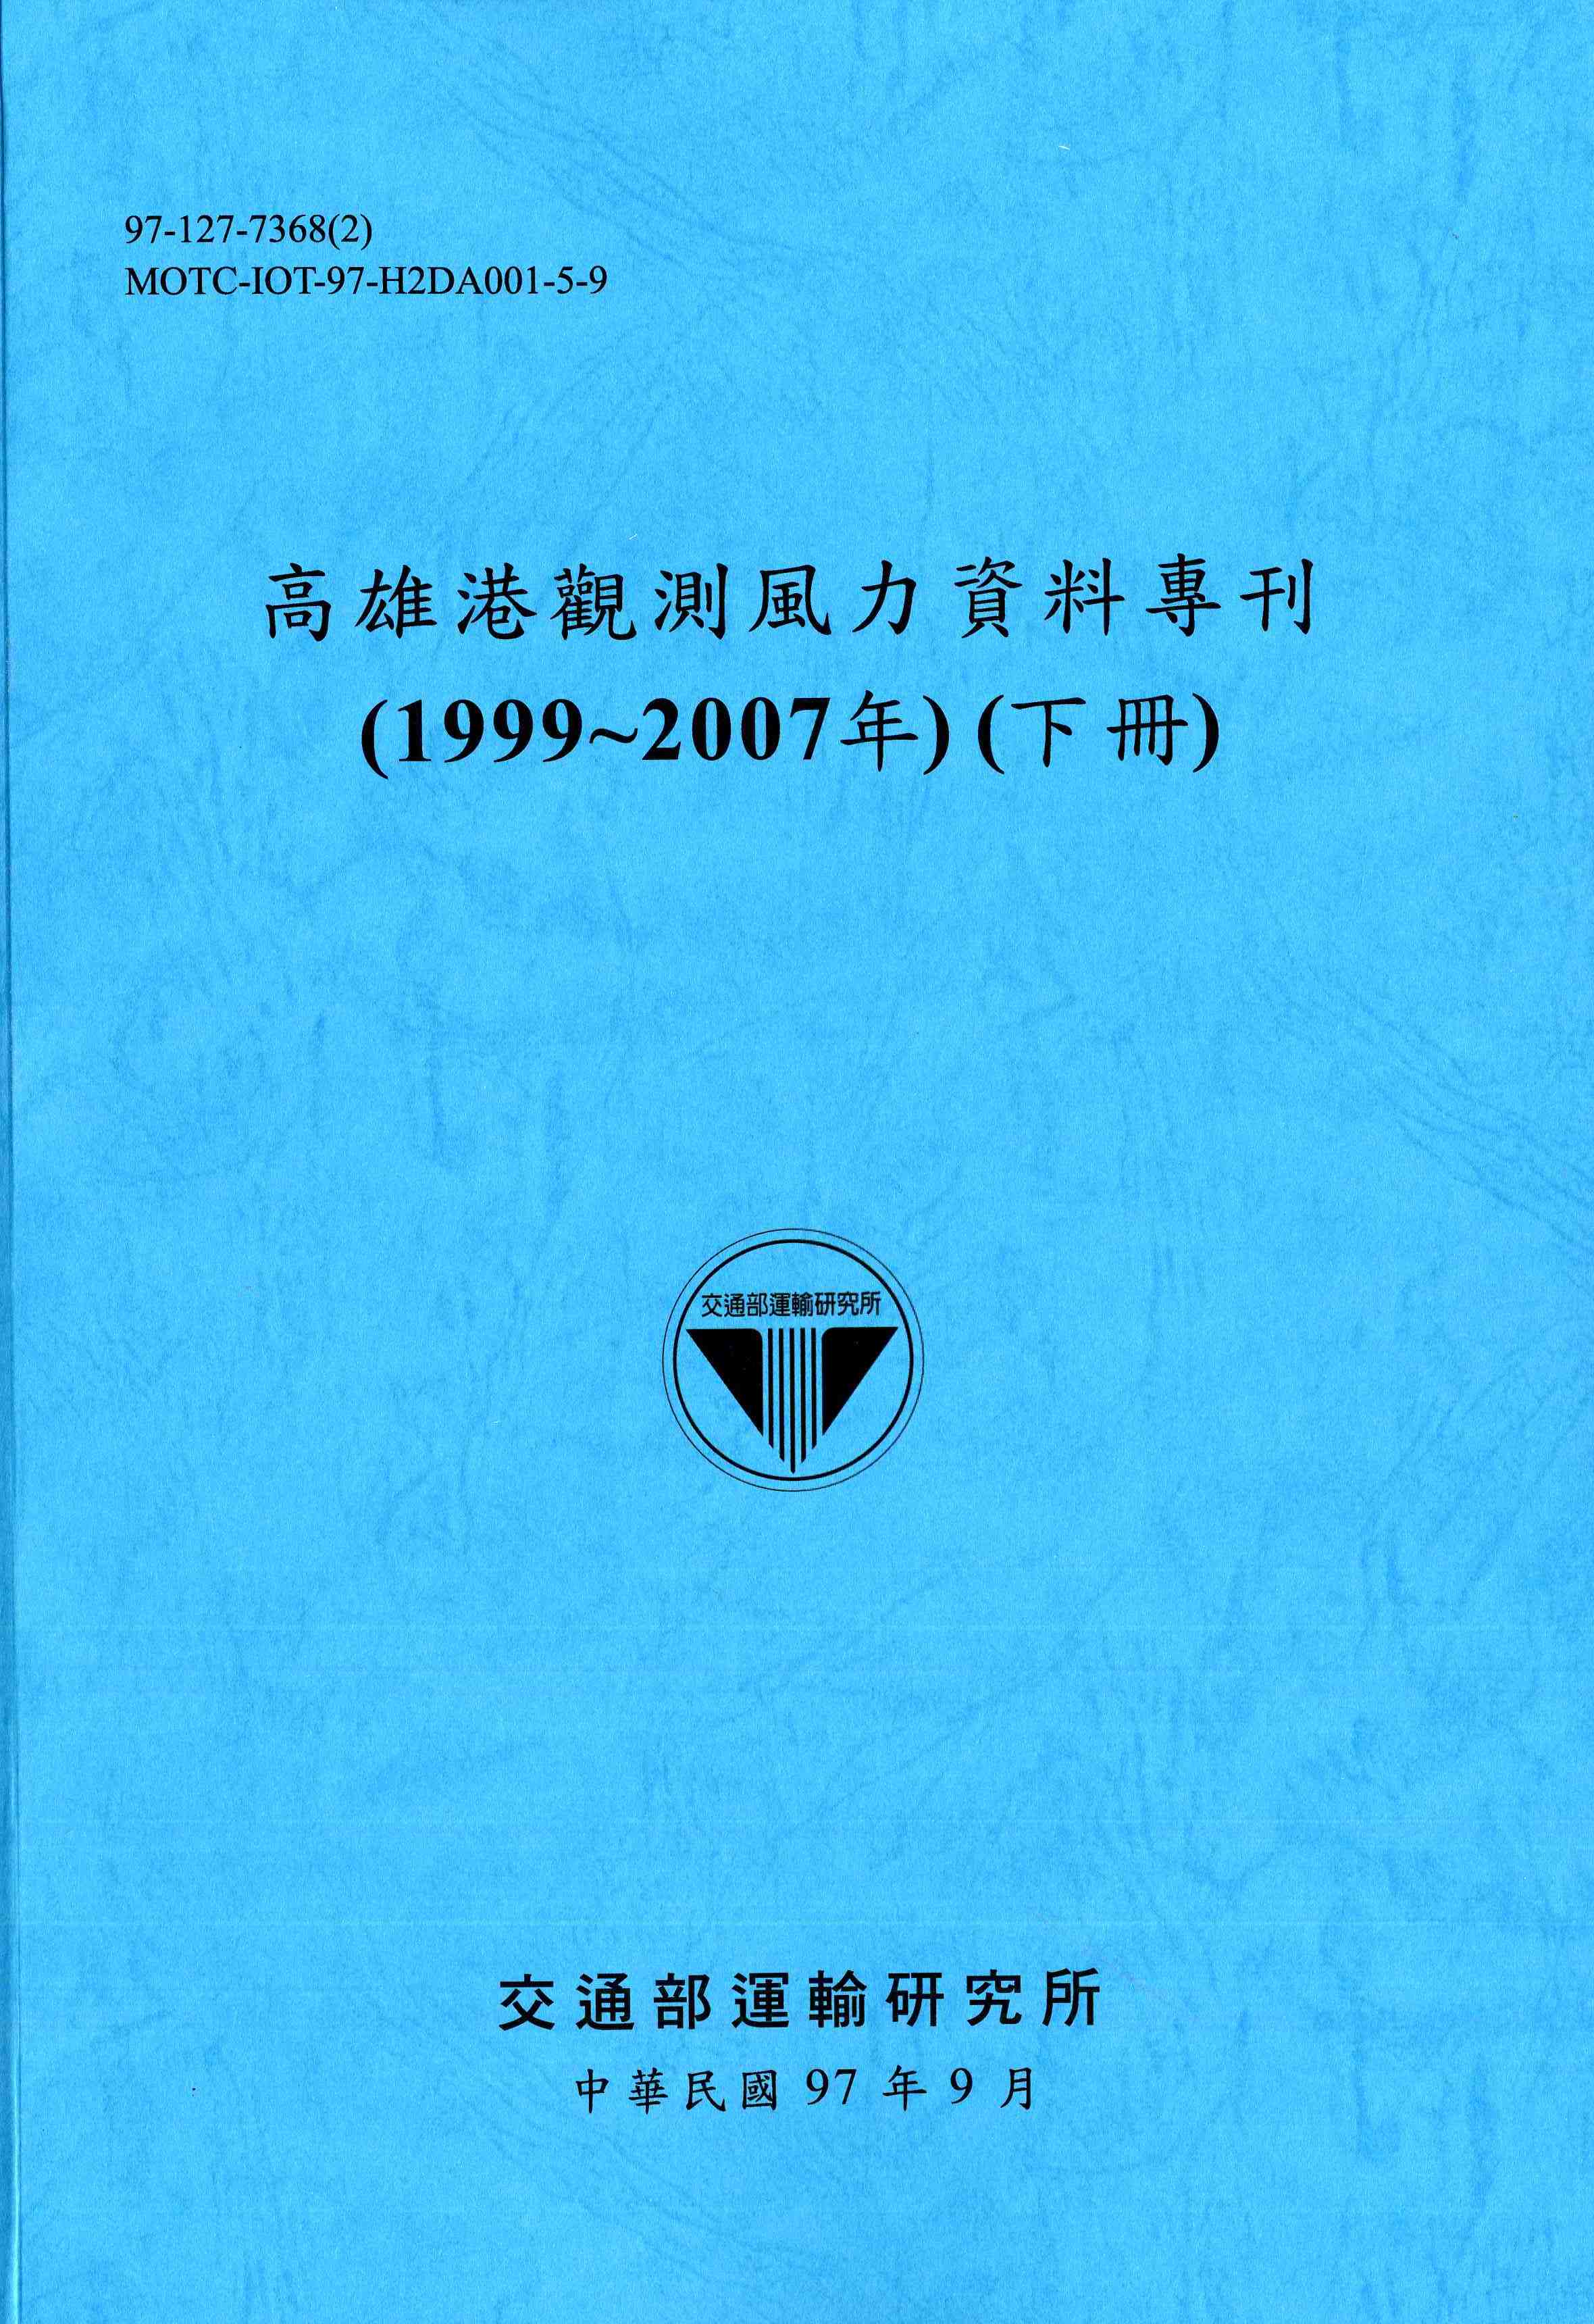 高雄港觀測風力資料專刊(1999~2007年)(下冊)